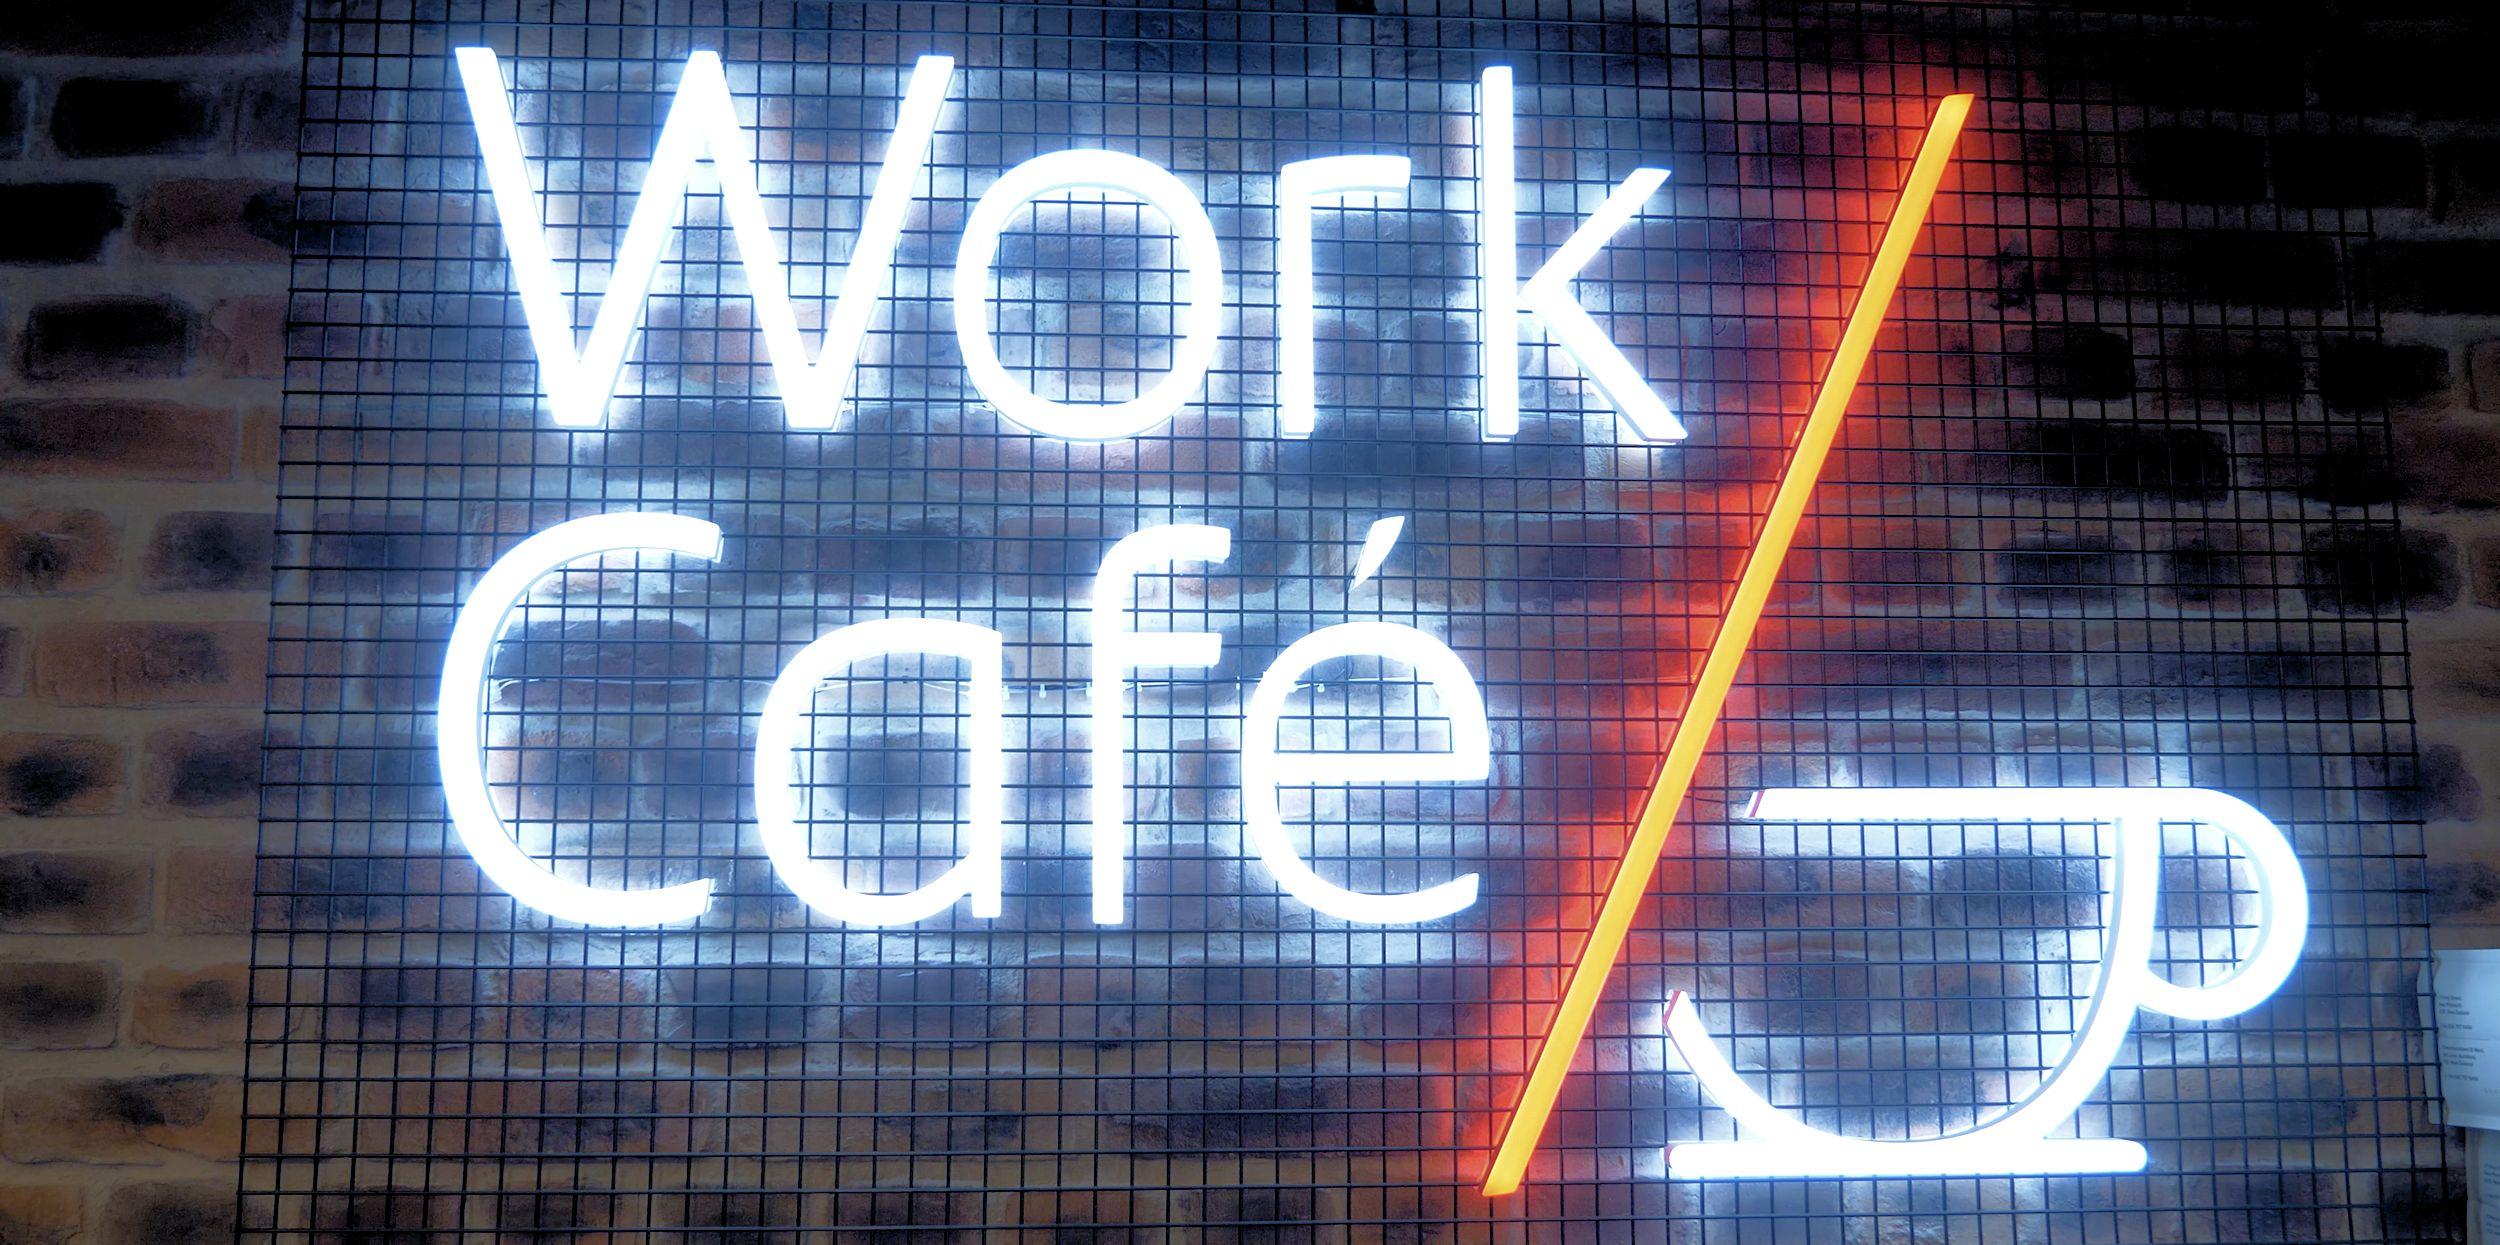 Santander Work Cafe sign